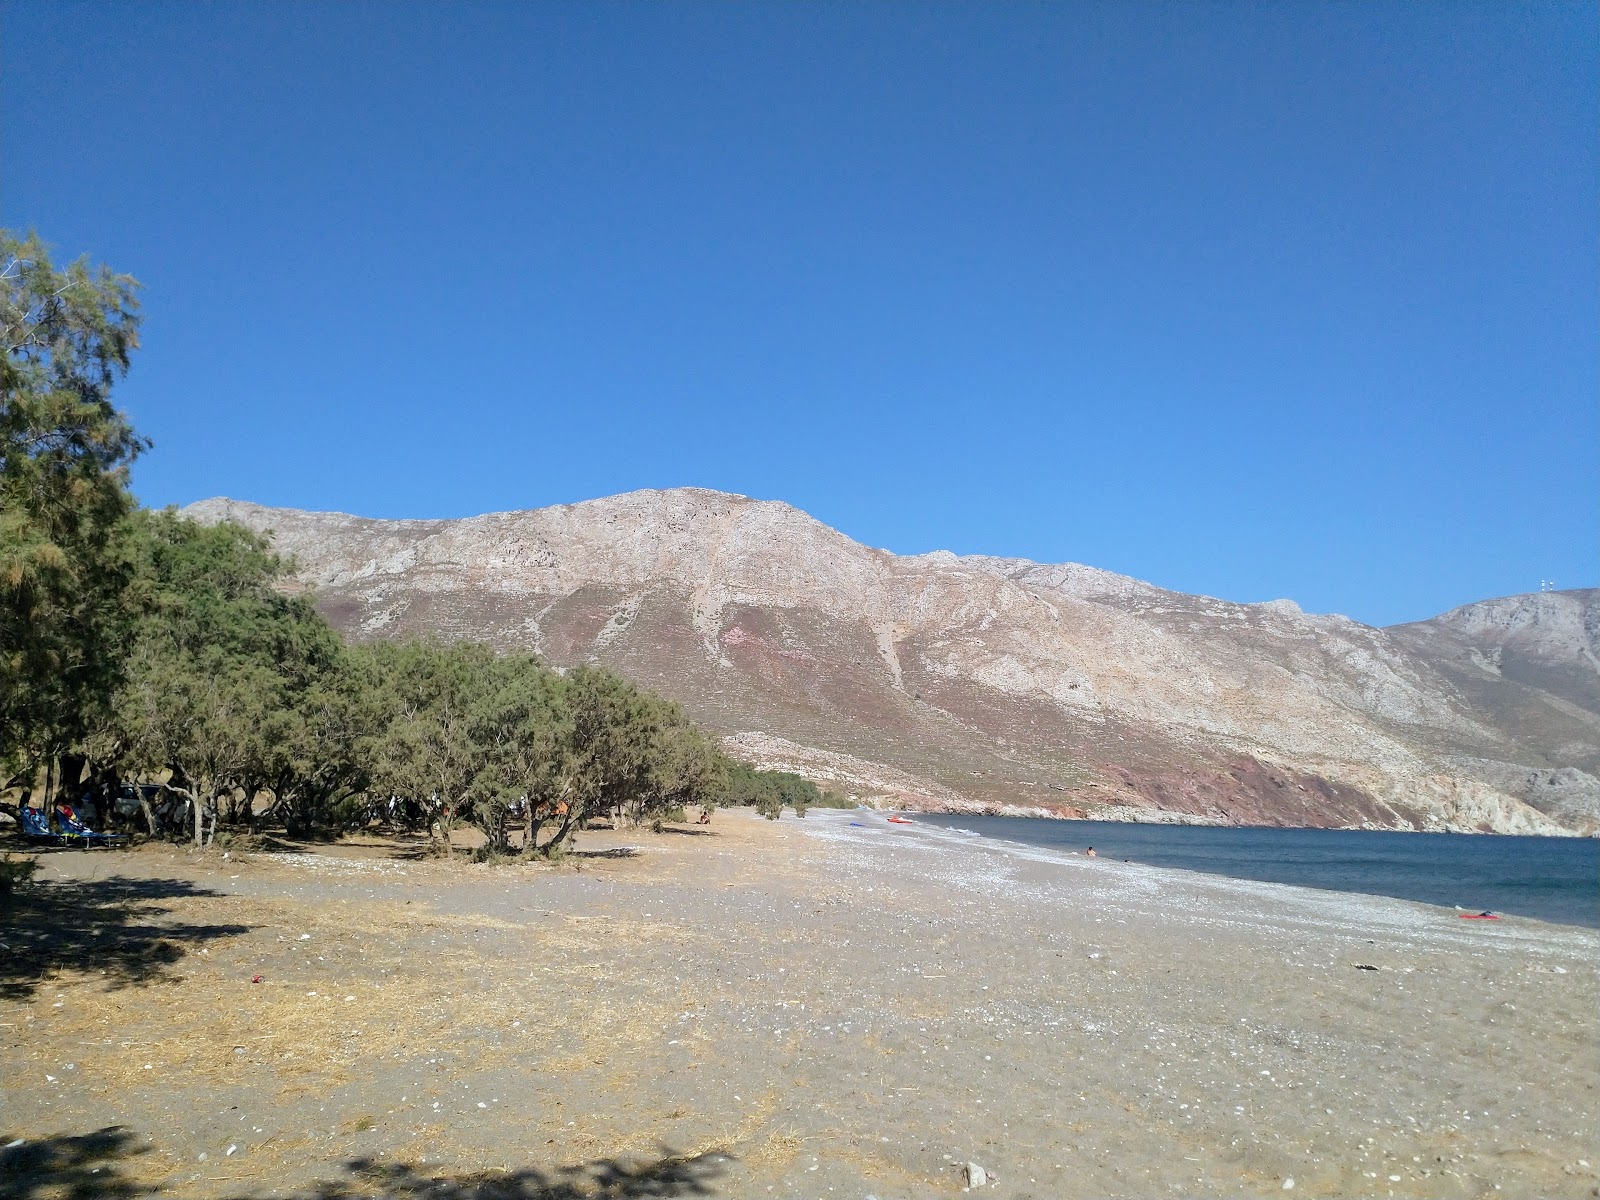 Zdjęcie Eristos beach położony w naturalnym obszarze